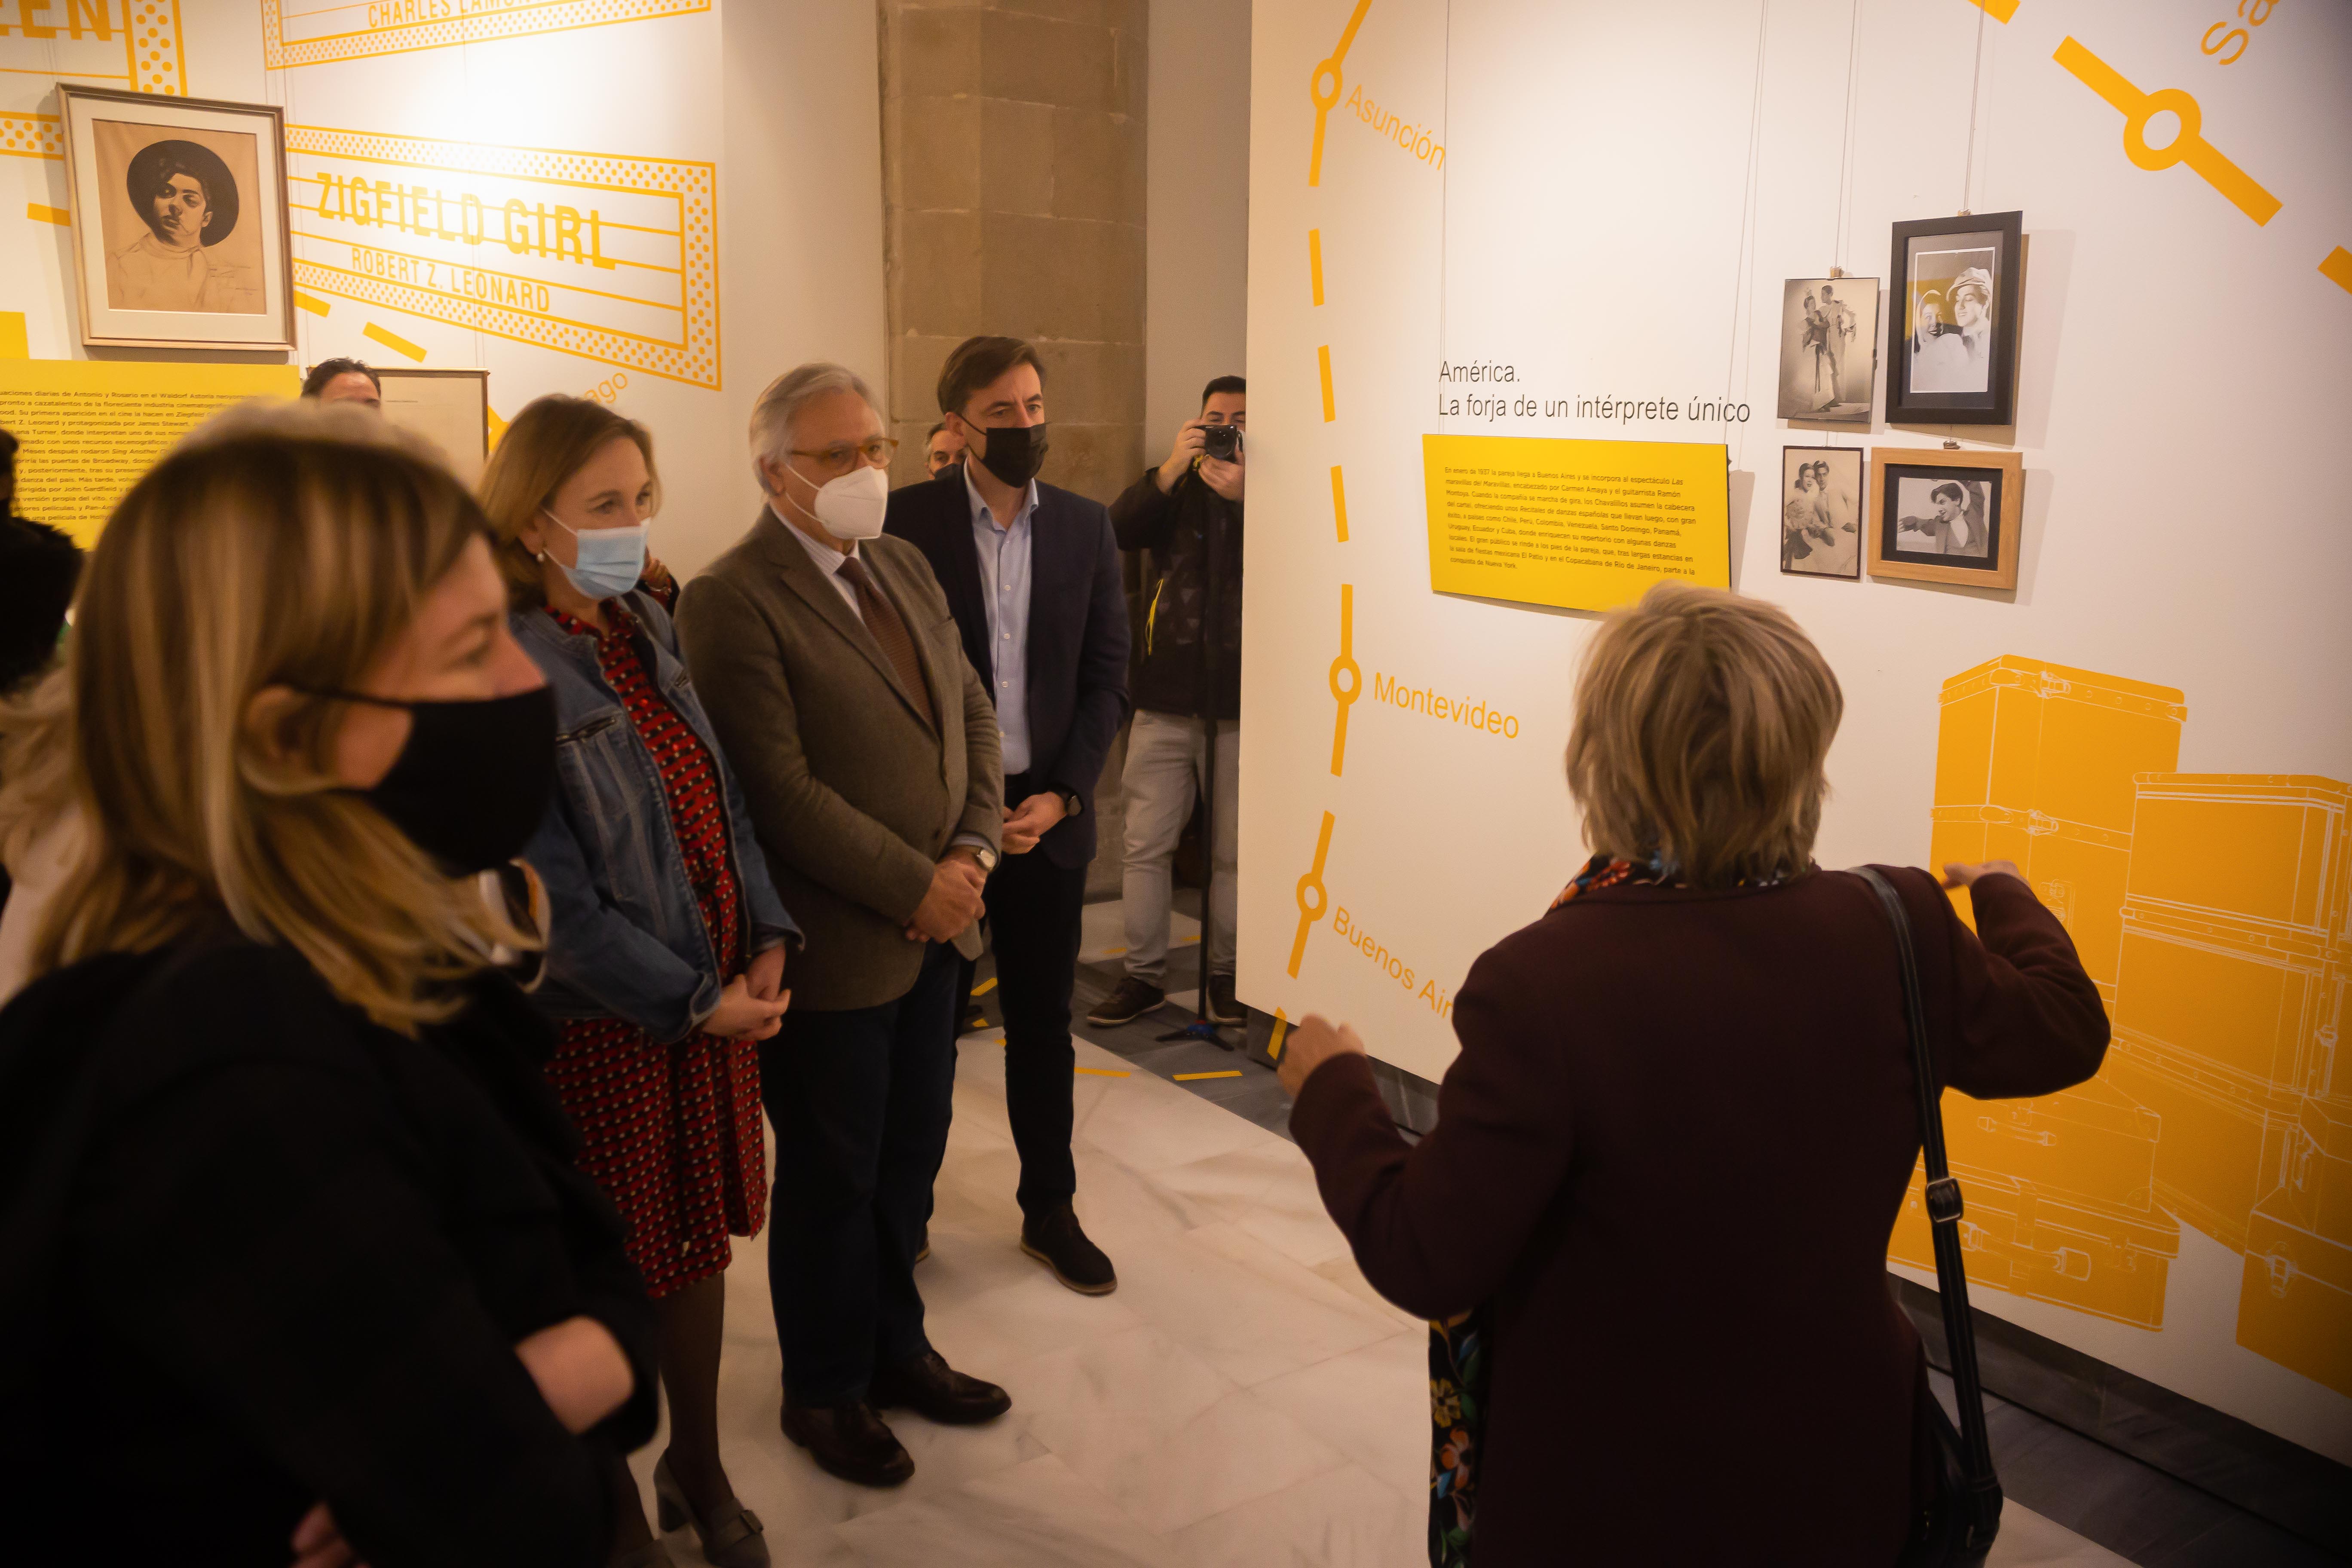 La comisaria de la exposición, Rosalía Gómez, explica a los asistentes a la inauguración algunos detalles de la muestra sobre el legado de Antonio el Bailarín.